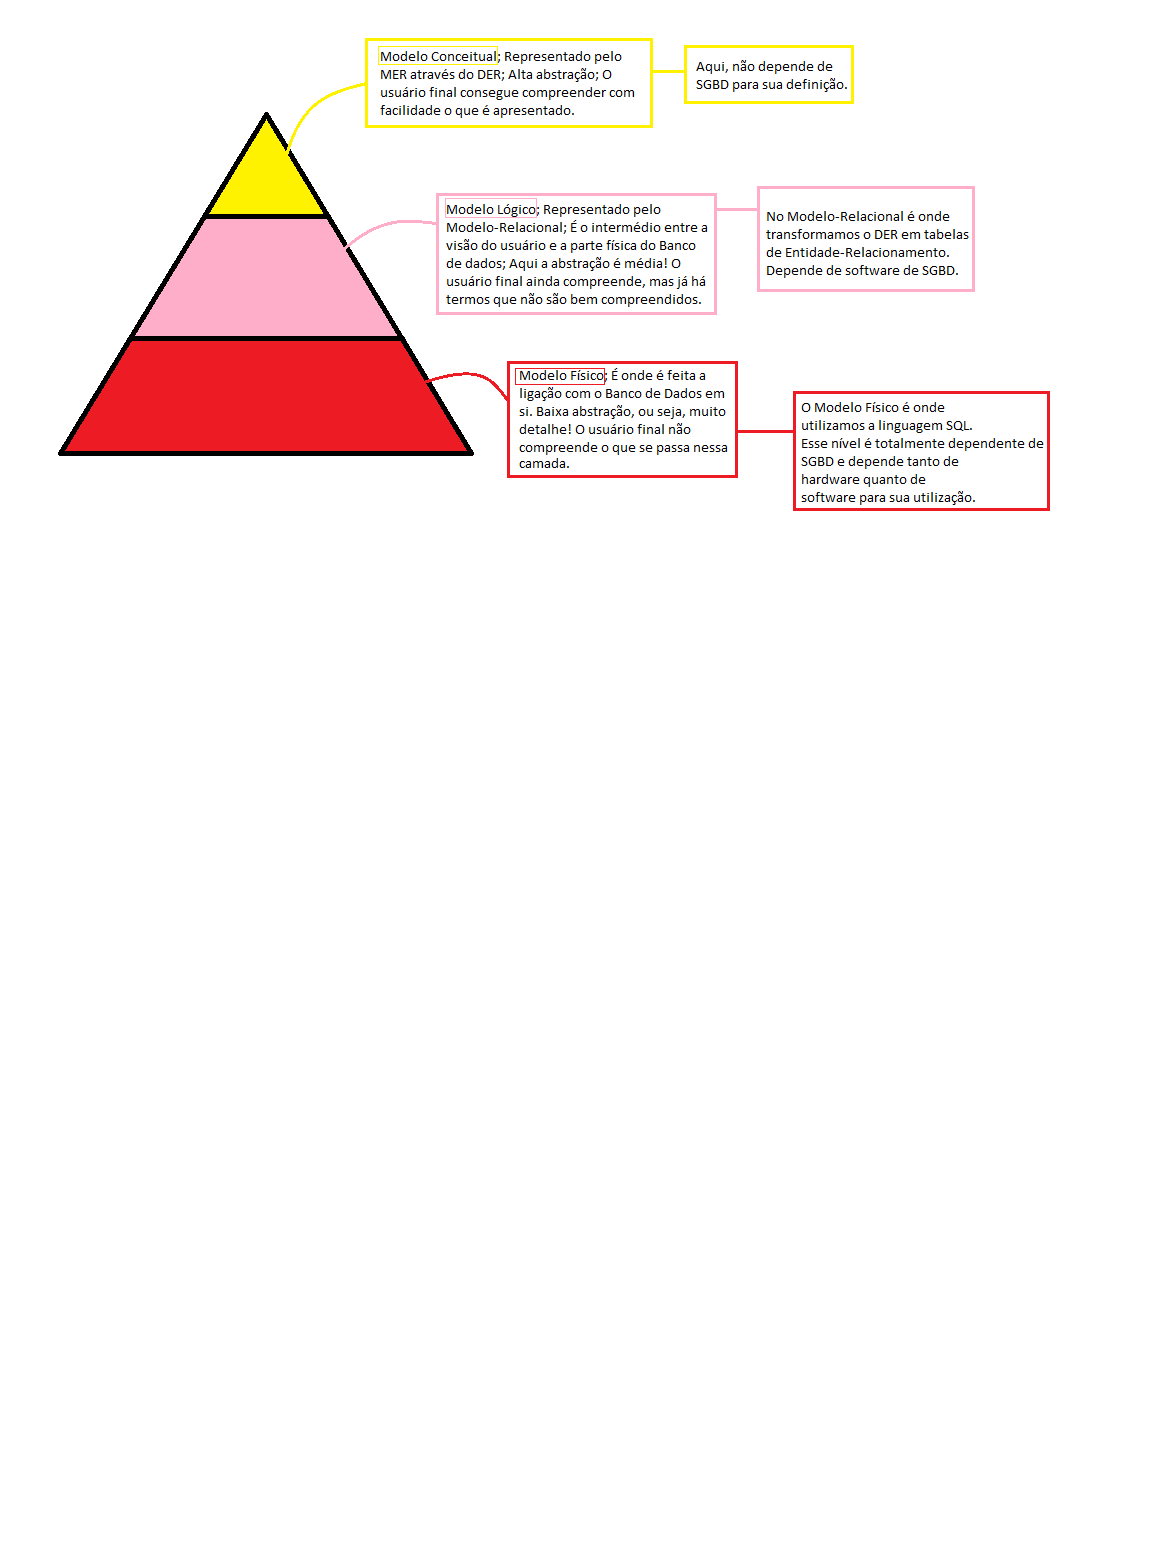 desenho de uma pirâmide explicando os níveis conceitual, lógico e físico de uma Modelagem de Banco de Dados